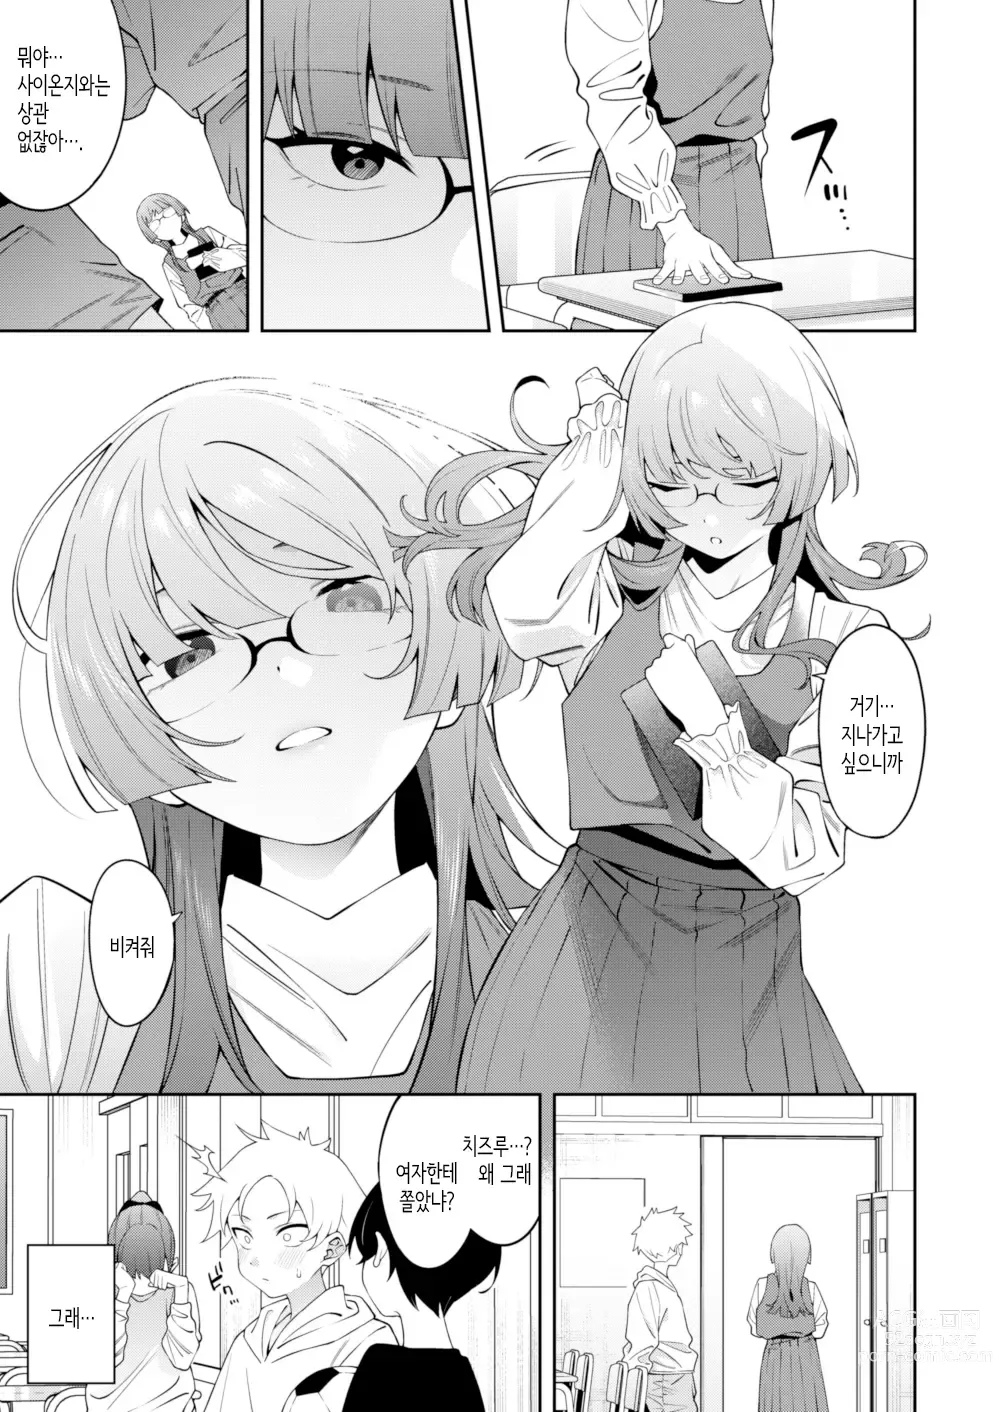 Page 4 of doujinshi 스미레 쨩은 머리가 좋다.